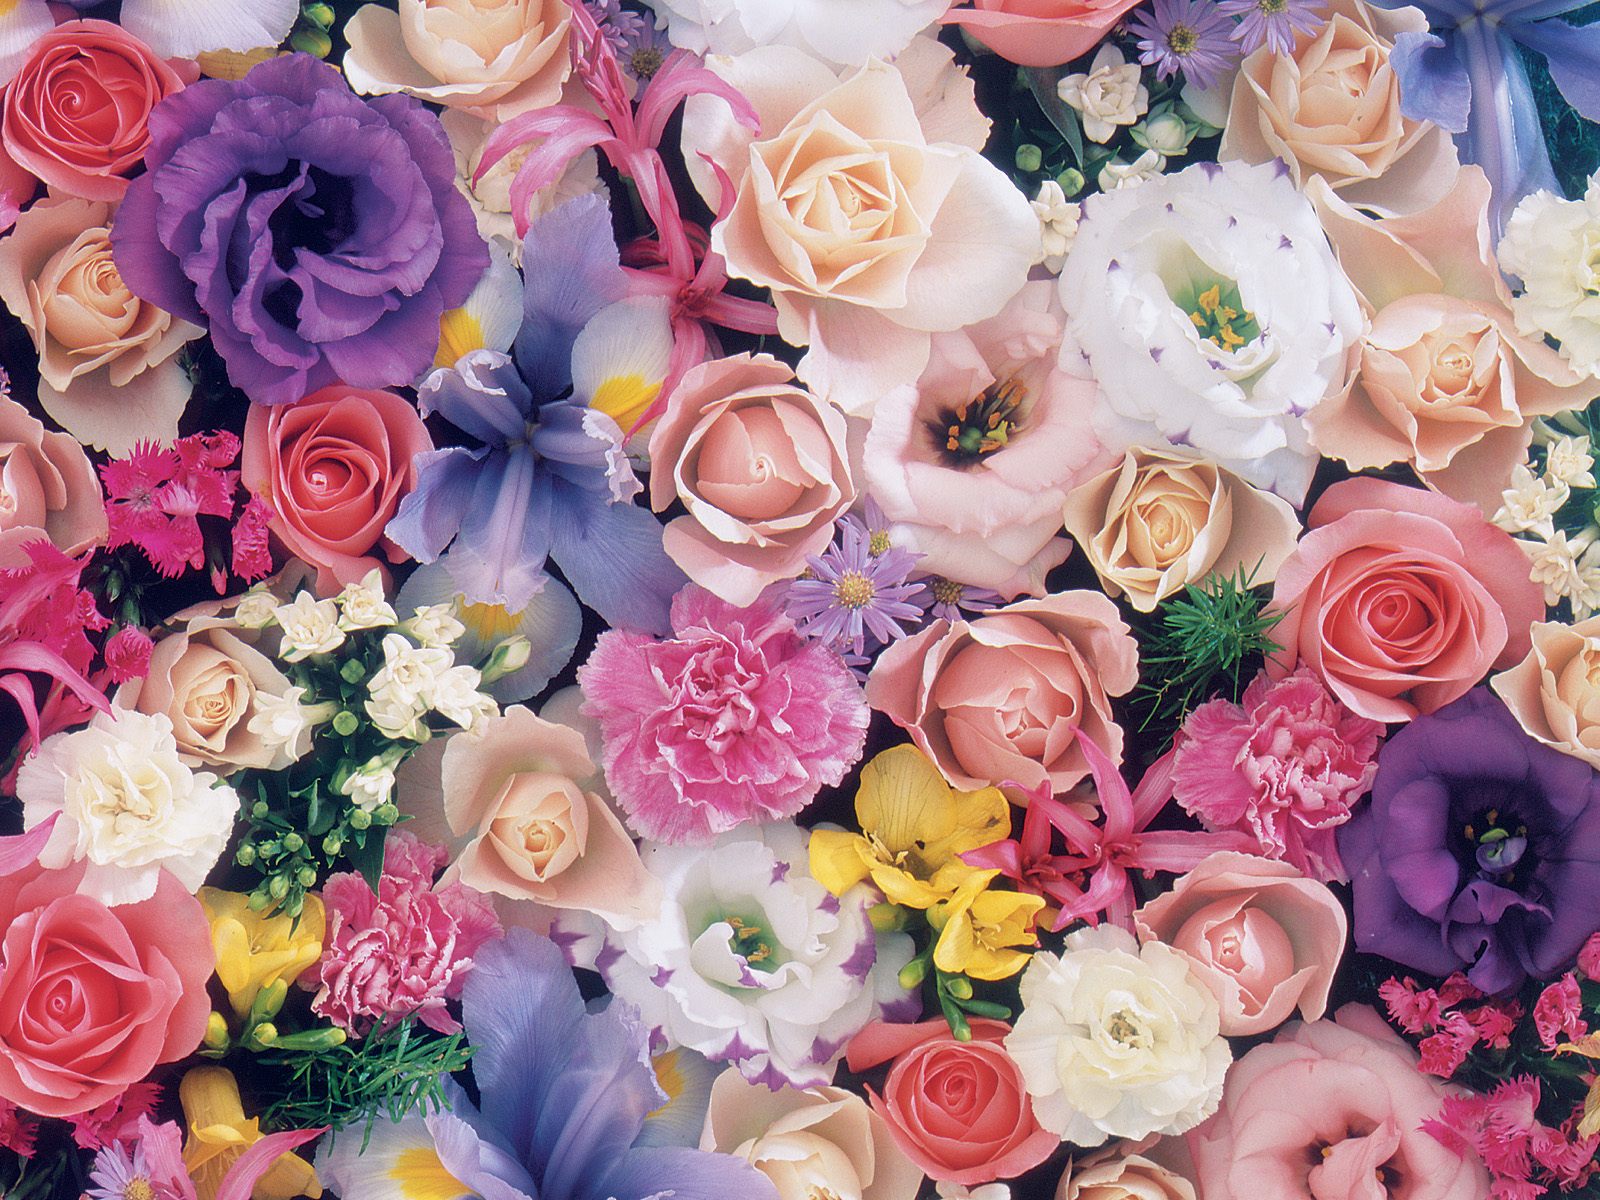 صور ورود جميلة اجمل صور الورد والازهار بجودة HD (42)